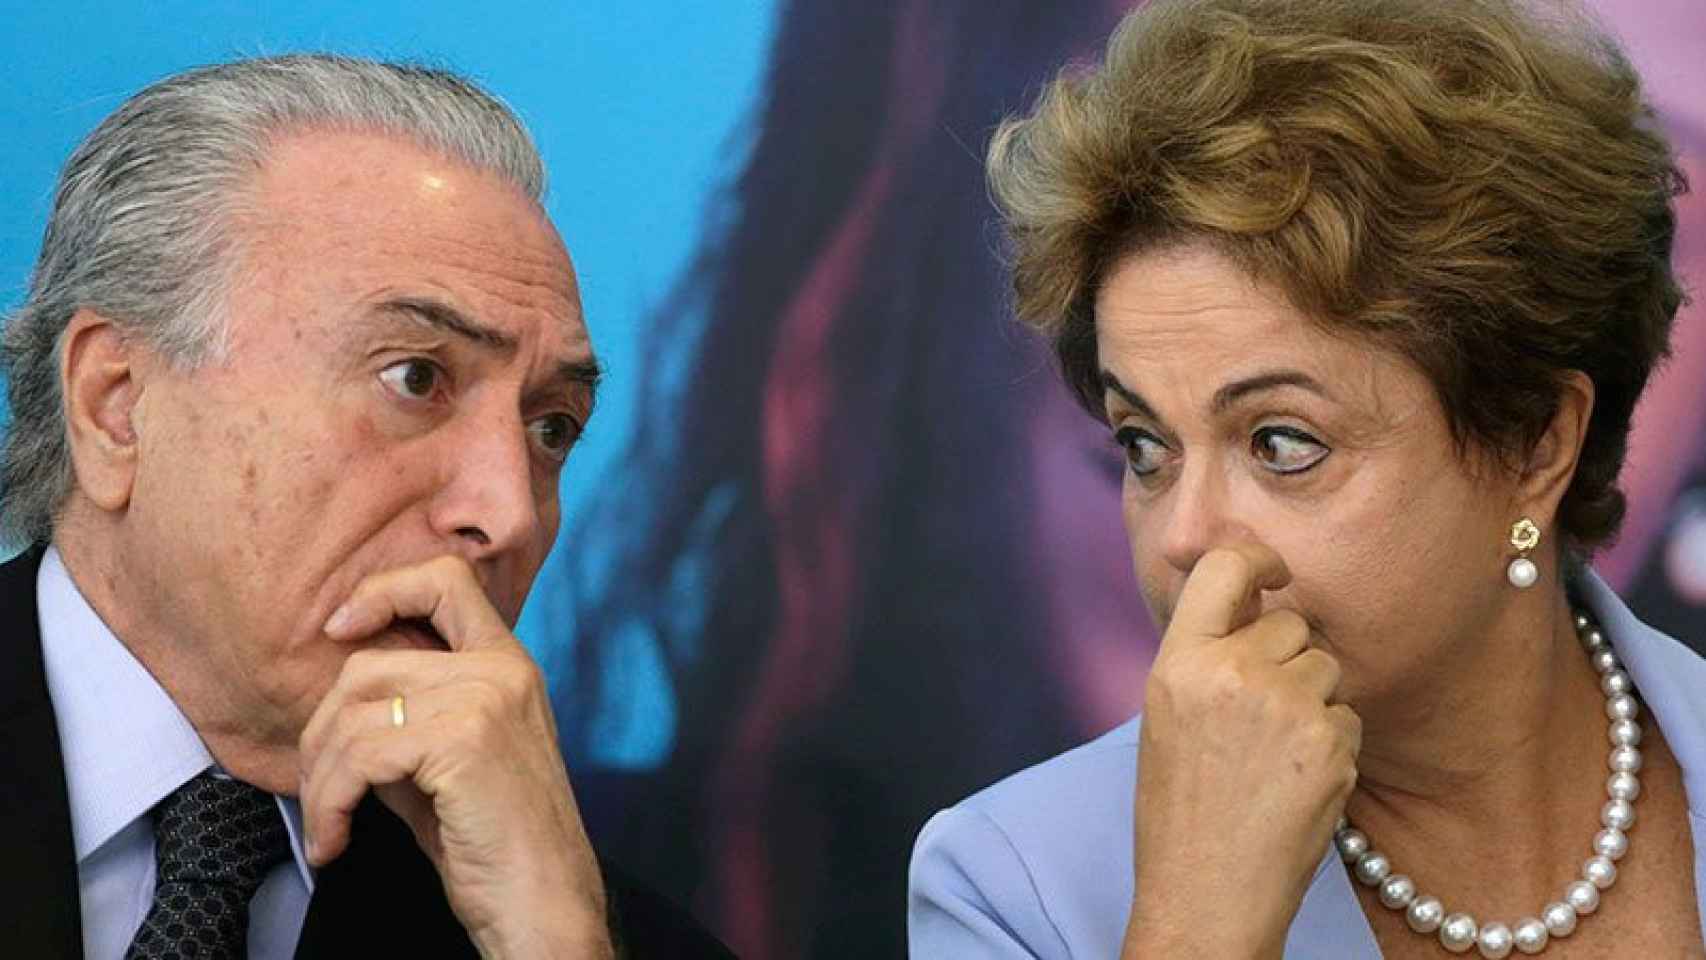 Michel Temer, hasta ahora vicepresidente de Brasil, sustituye a partir de hoy a Dilma Rousseff en la presidencia.